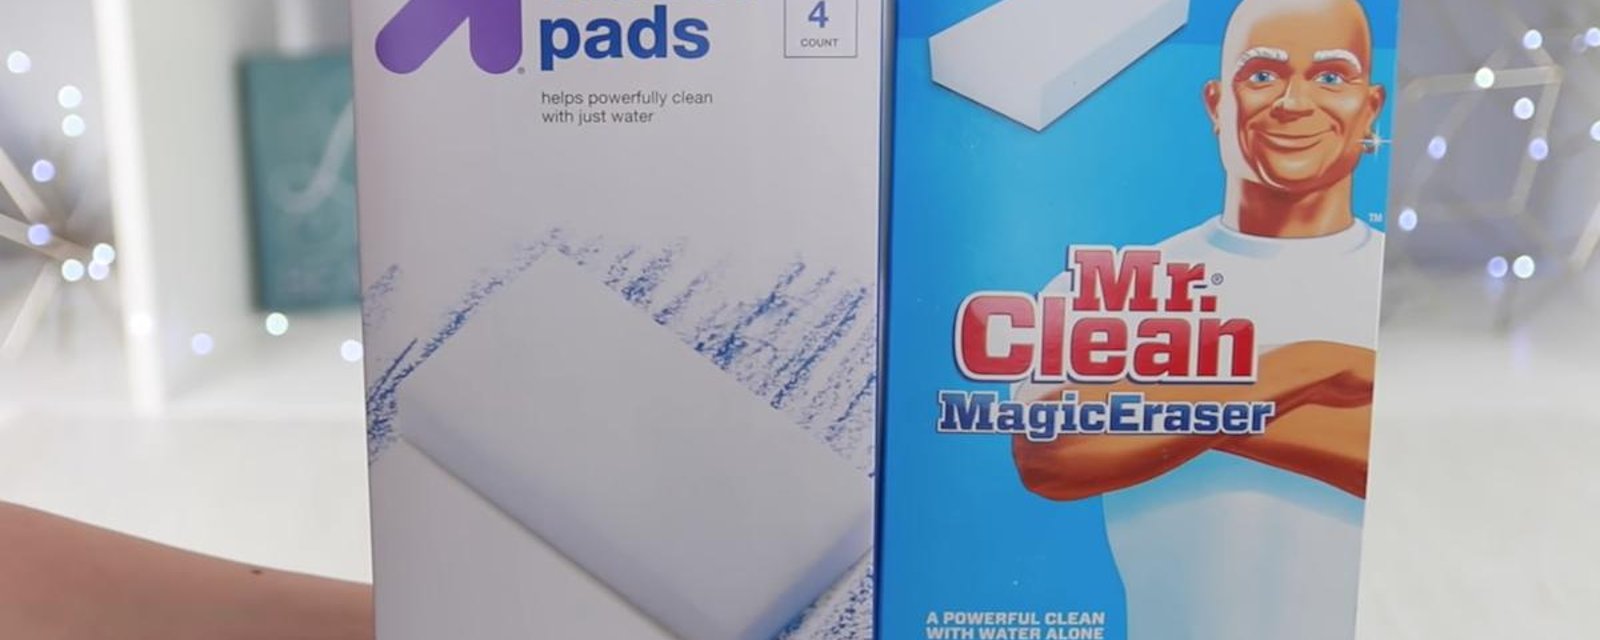 Voici plusieurs types de taches récalcitrantes lavables avec une éponge magique de Monsieur Net!